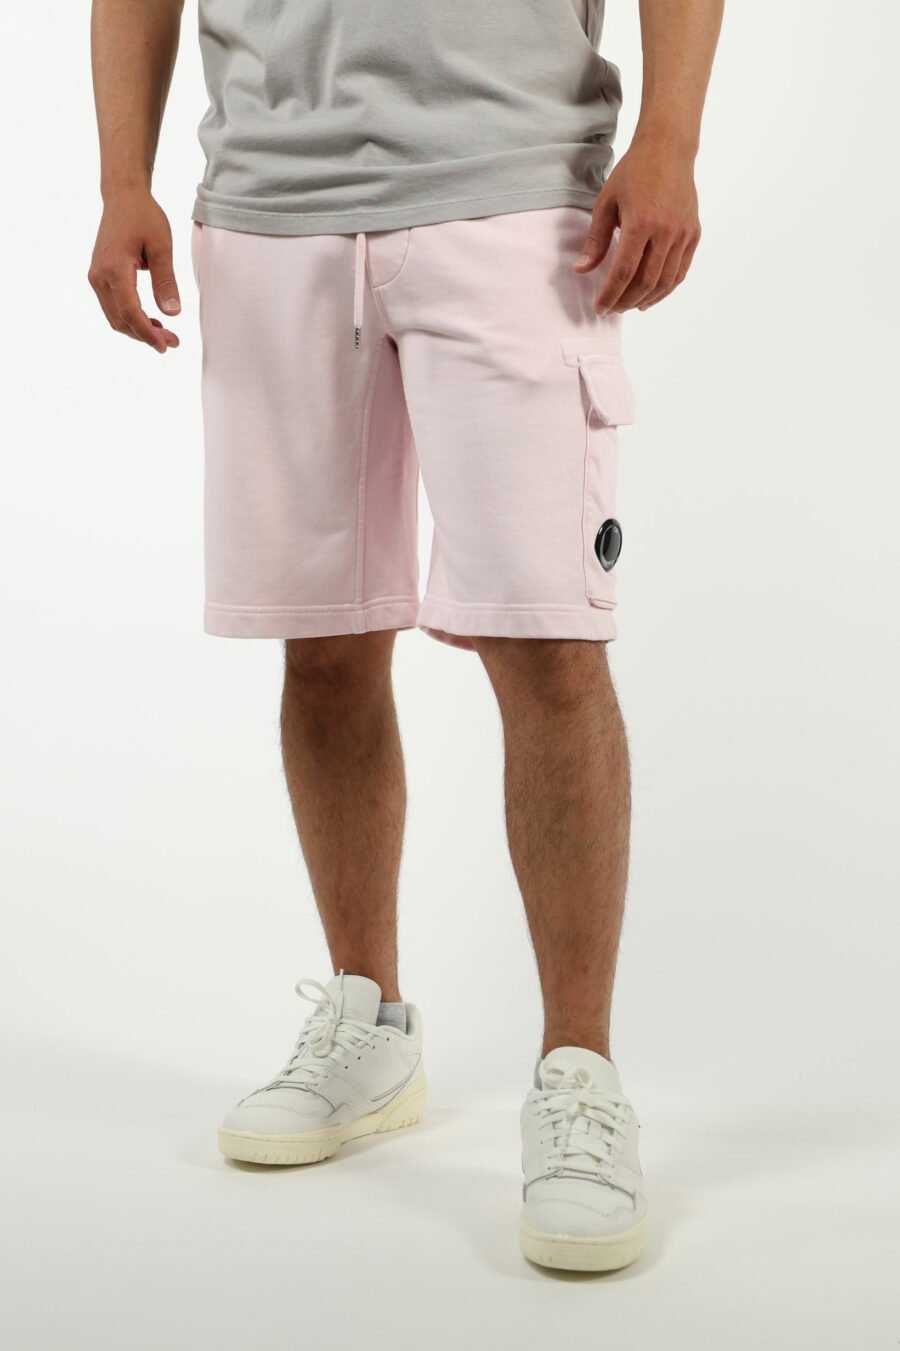 Pantalón de chándal midi rosa estilo cargo con minilogo lente - number13456